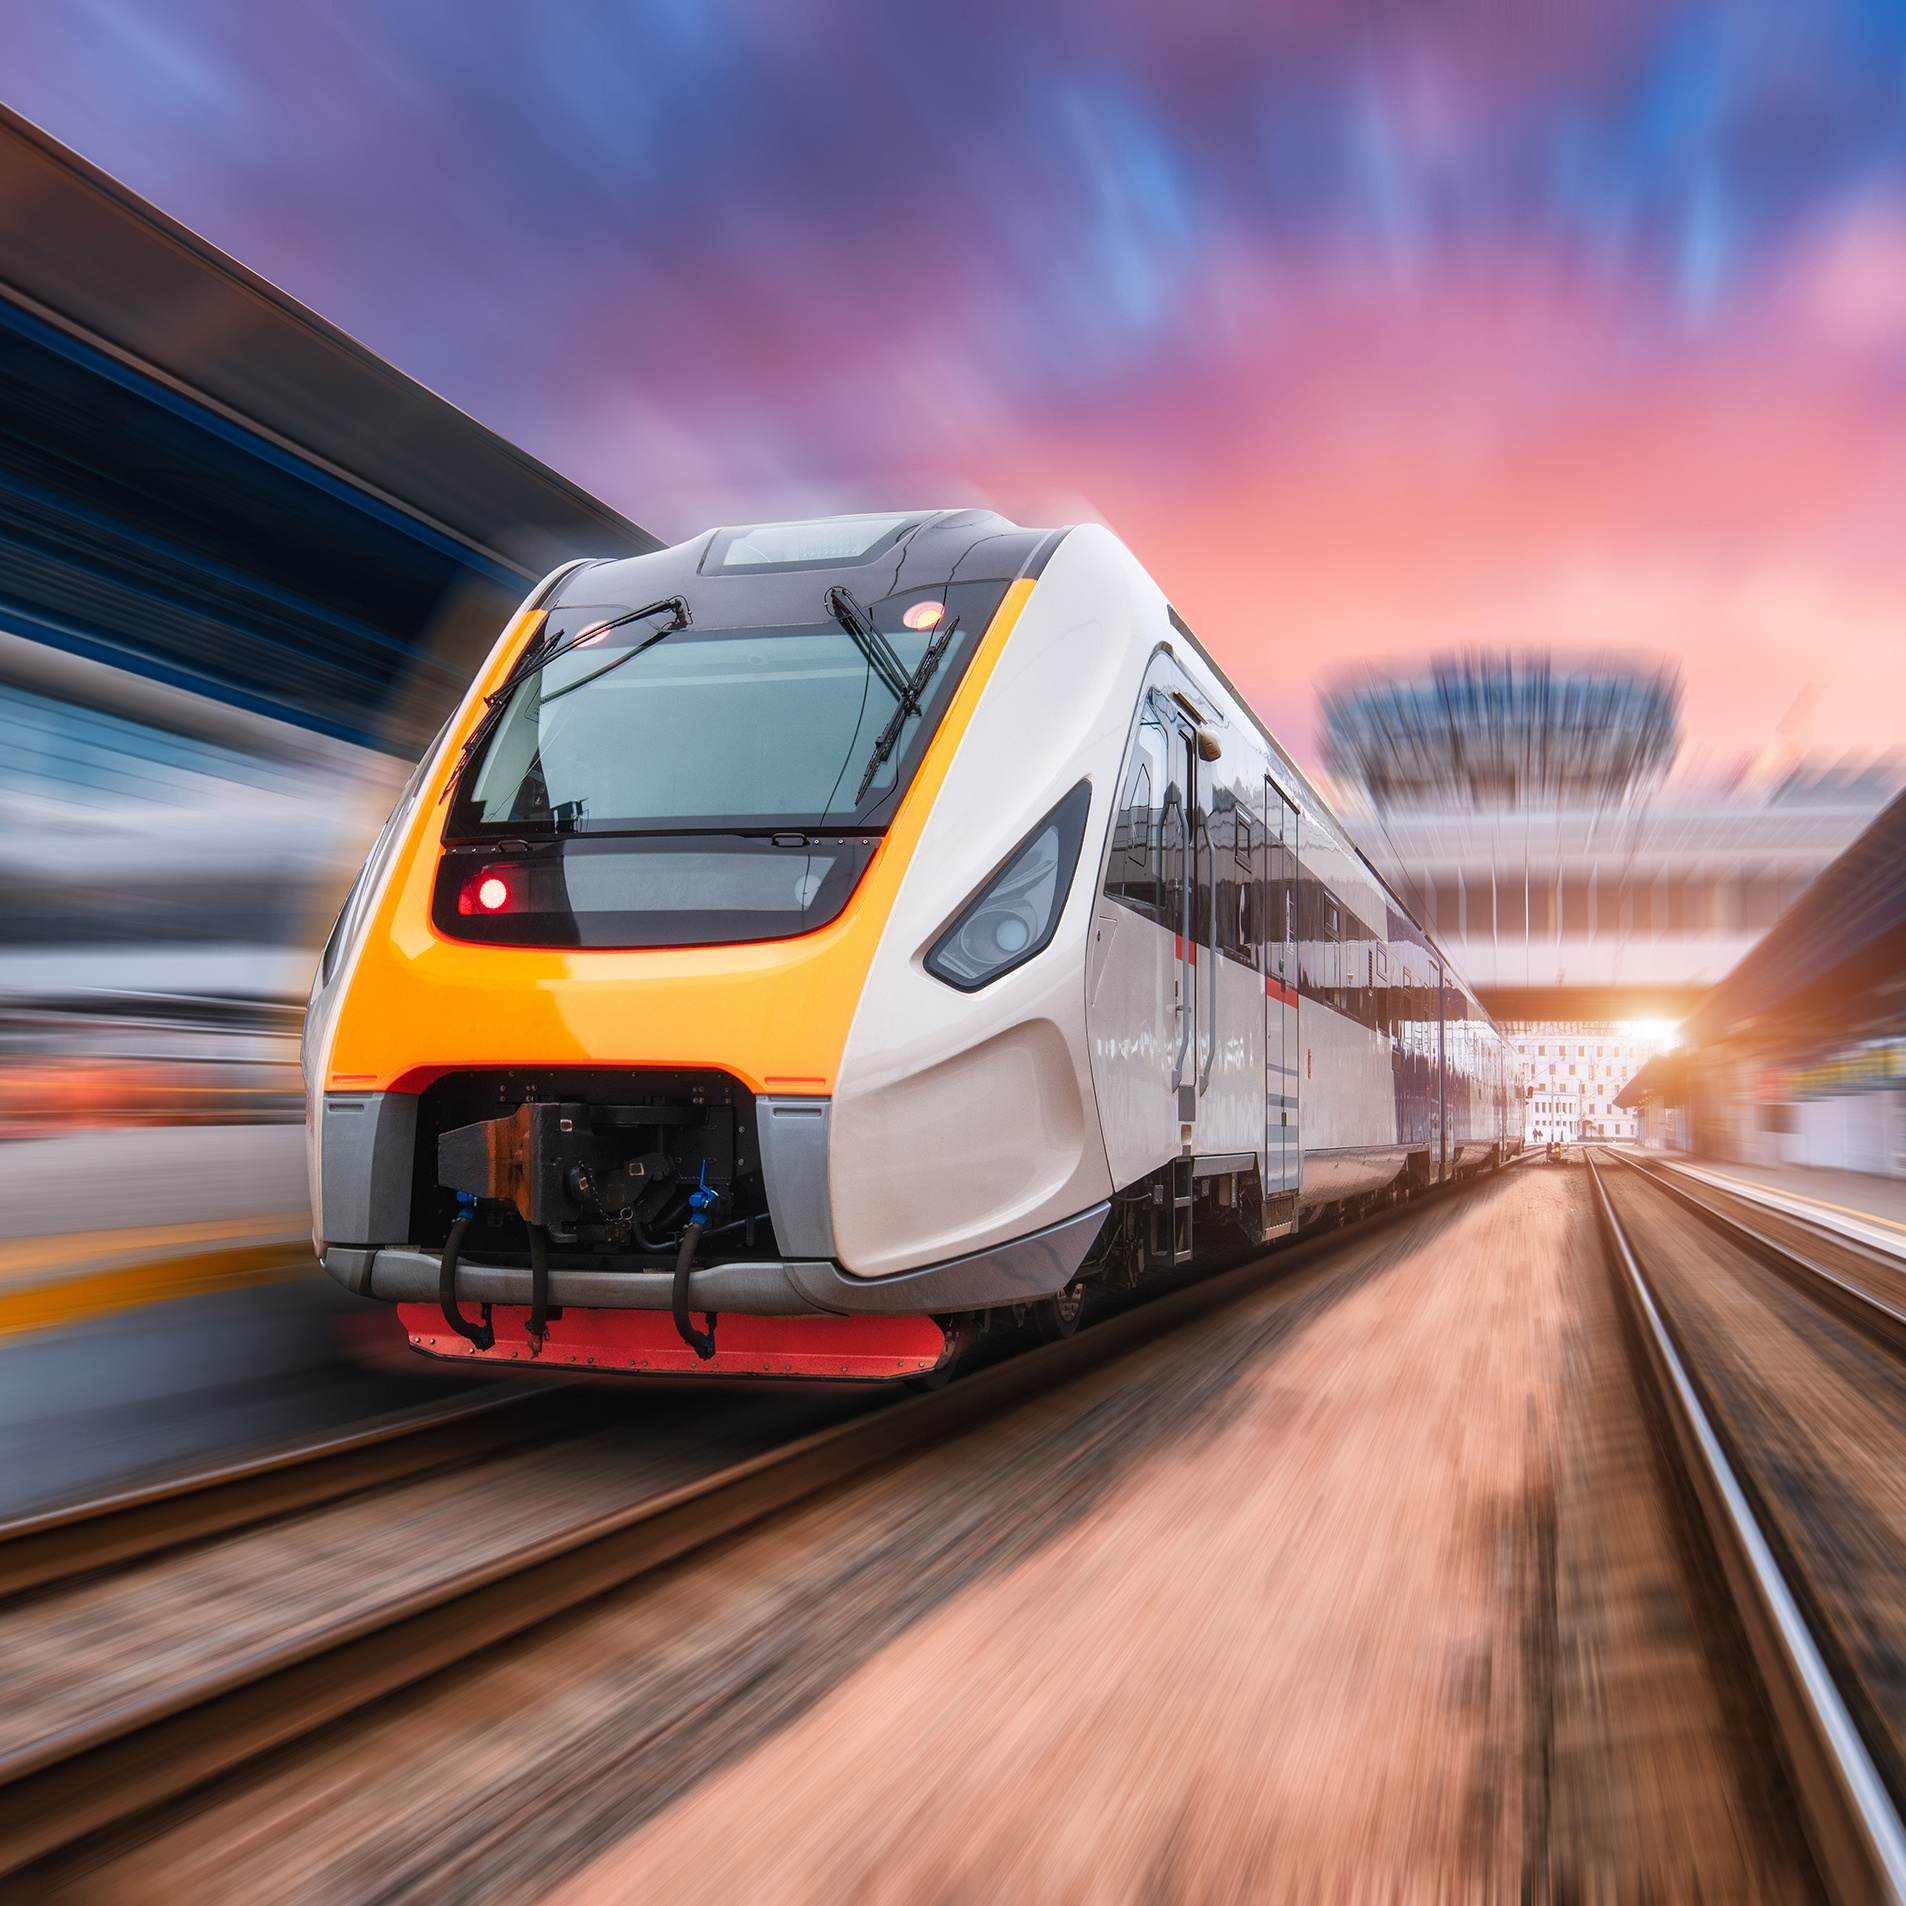 High-speed rail